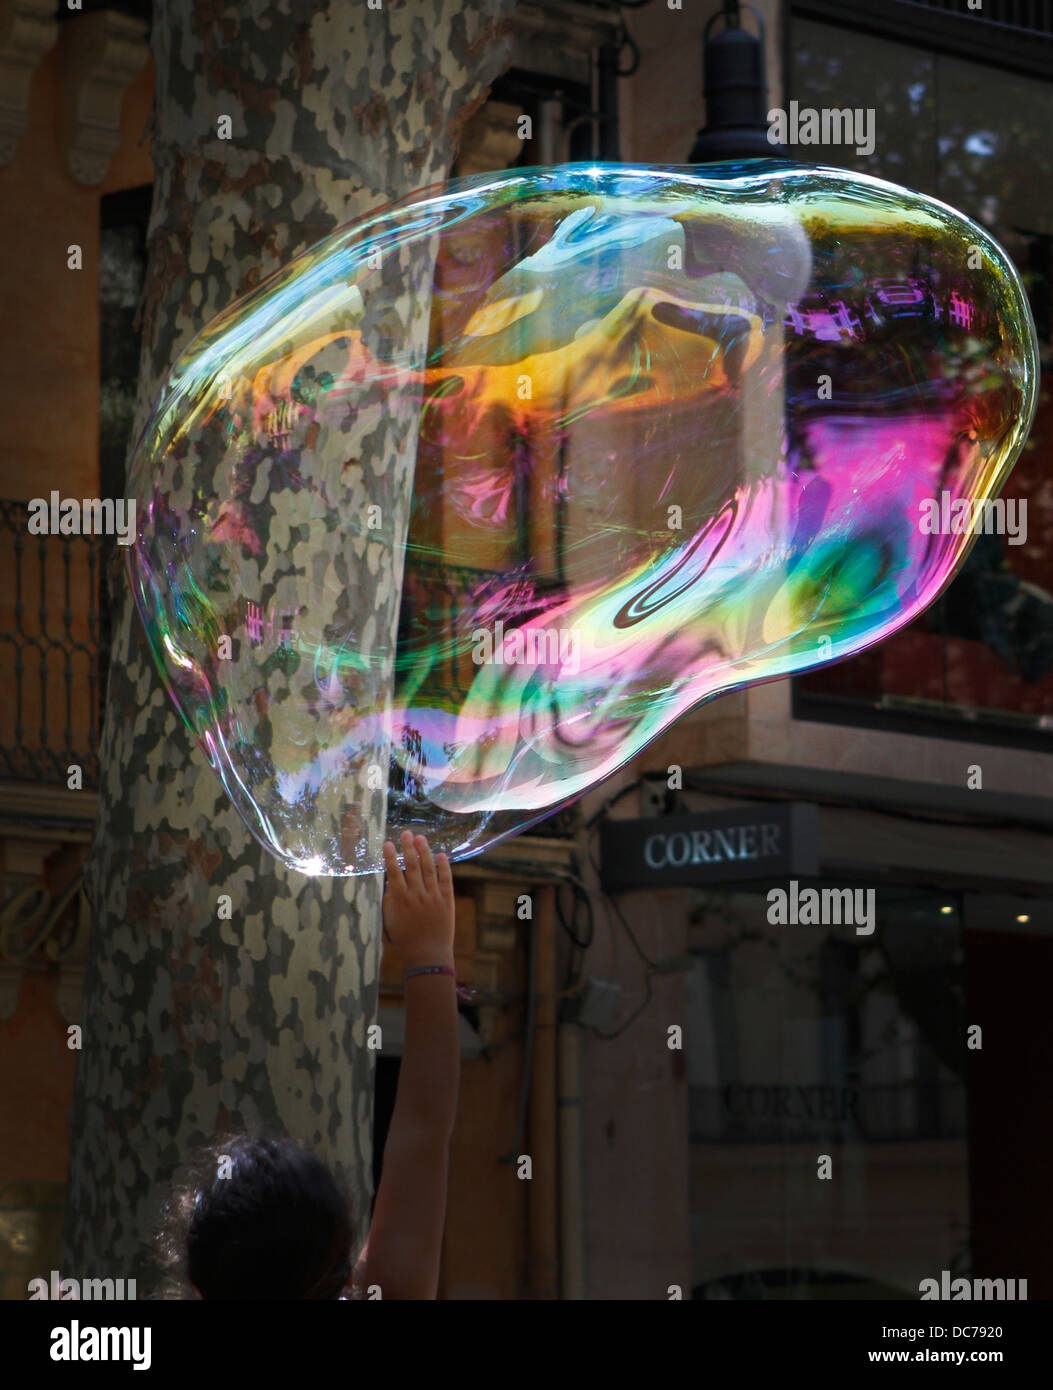 Uomini vestiti come supereroi fare sapone gigante bubblesto attrarre turisti attenzione il centro di Palma, nell'isola spagnola di Maiorca Foto Stock